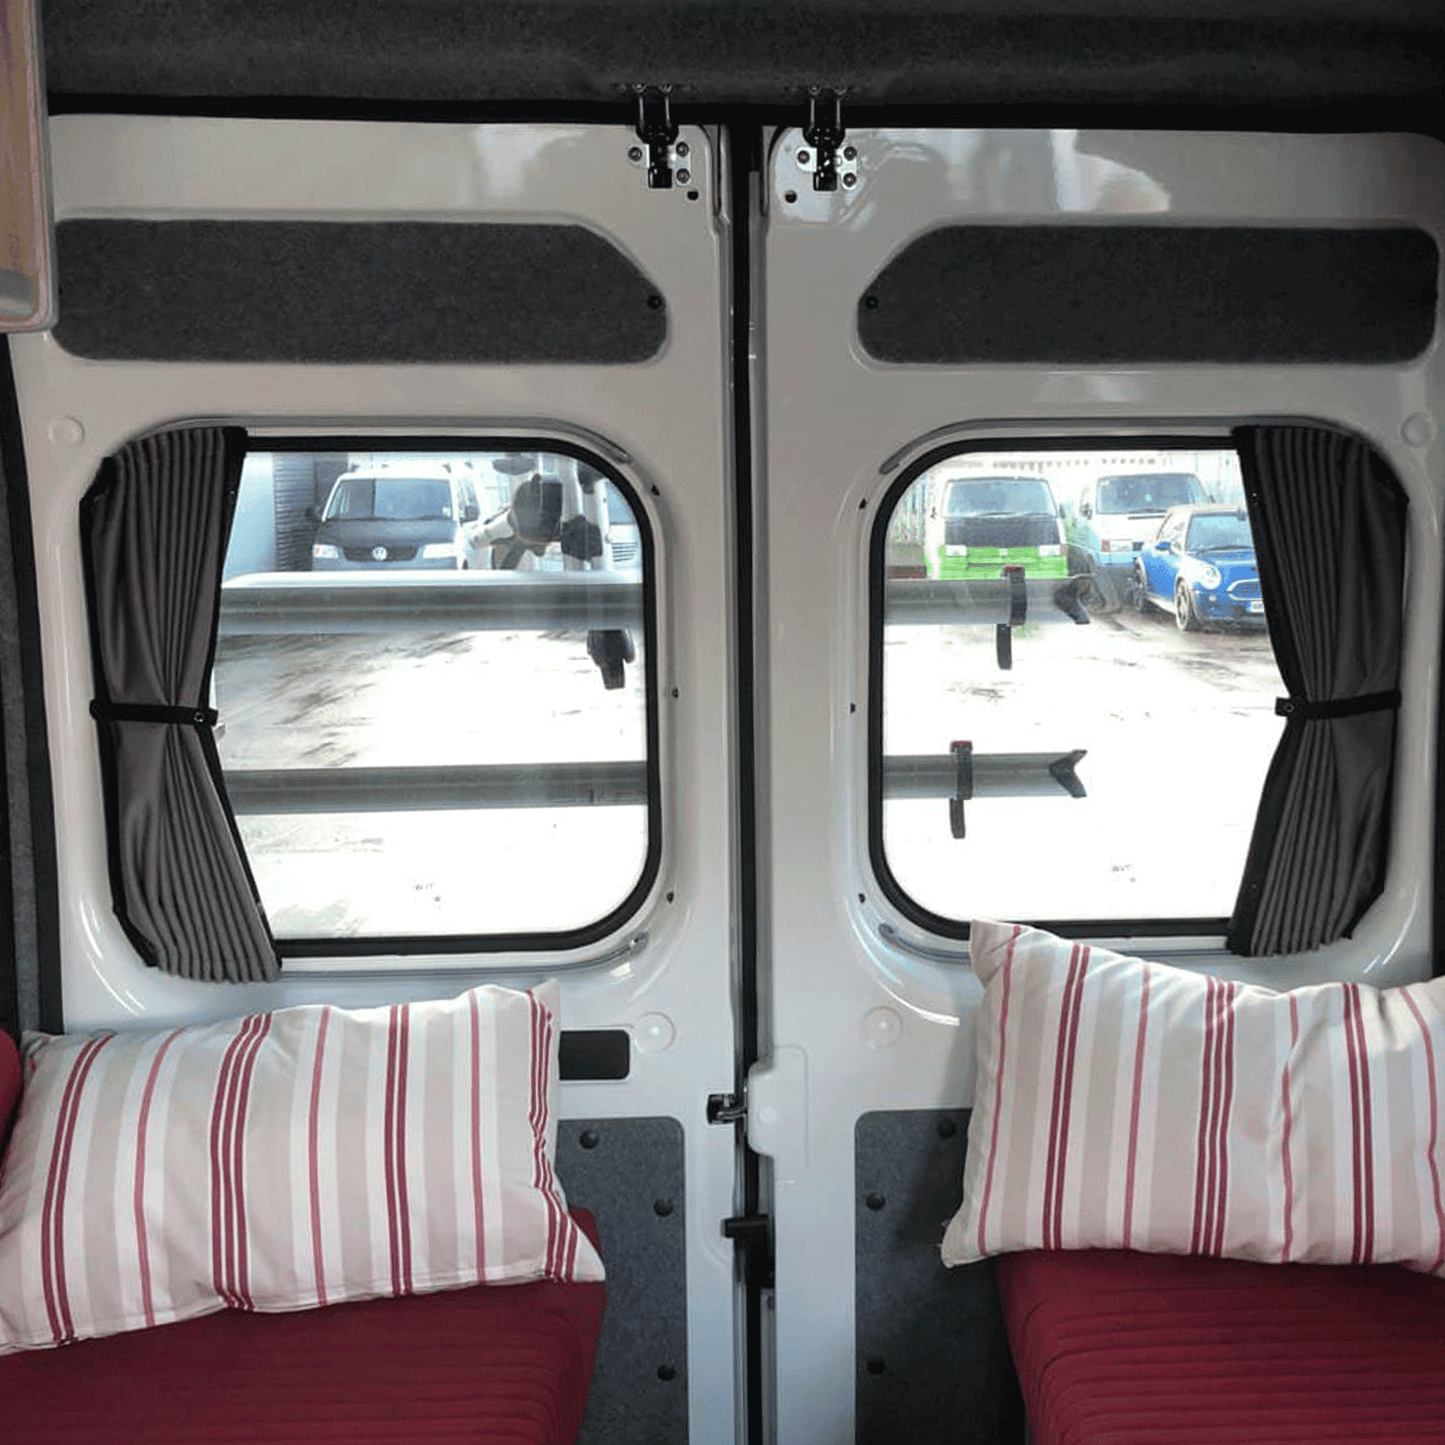 Renault Trafic Premium 1 x Barndoor Window Curtains Van-X